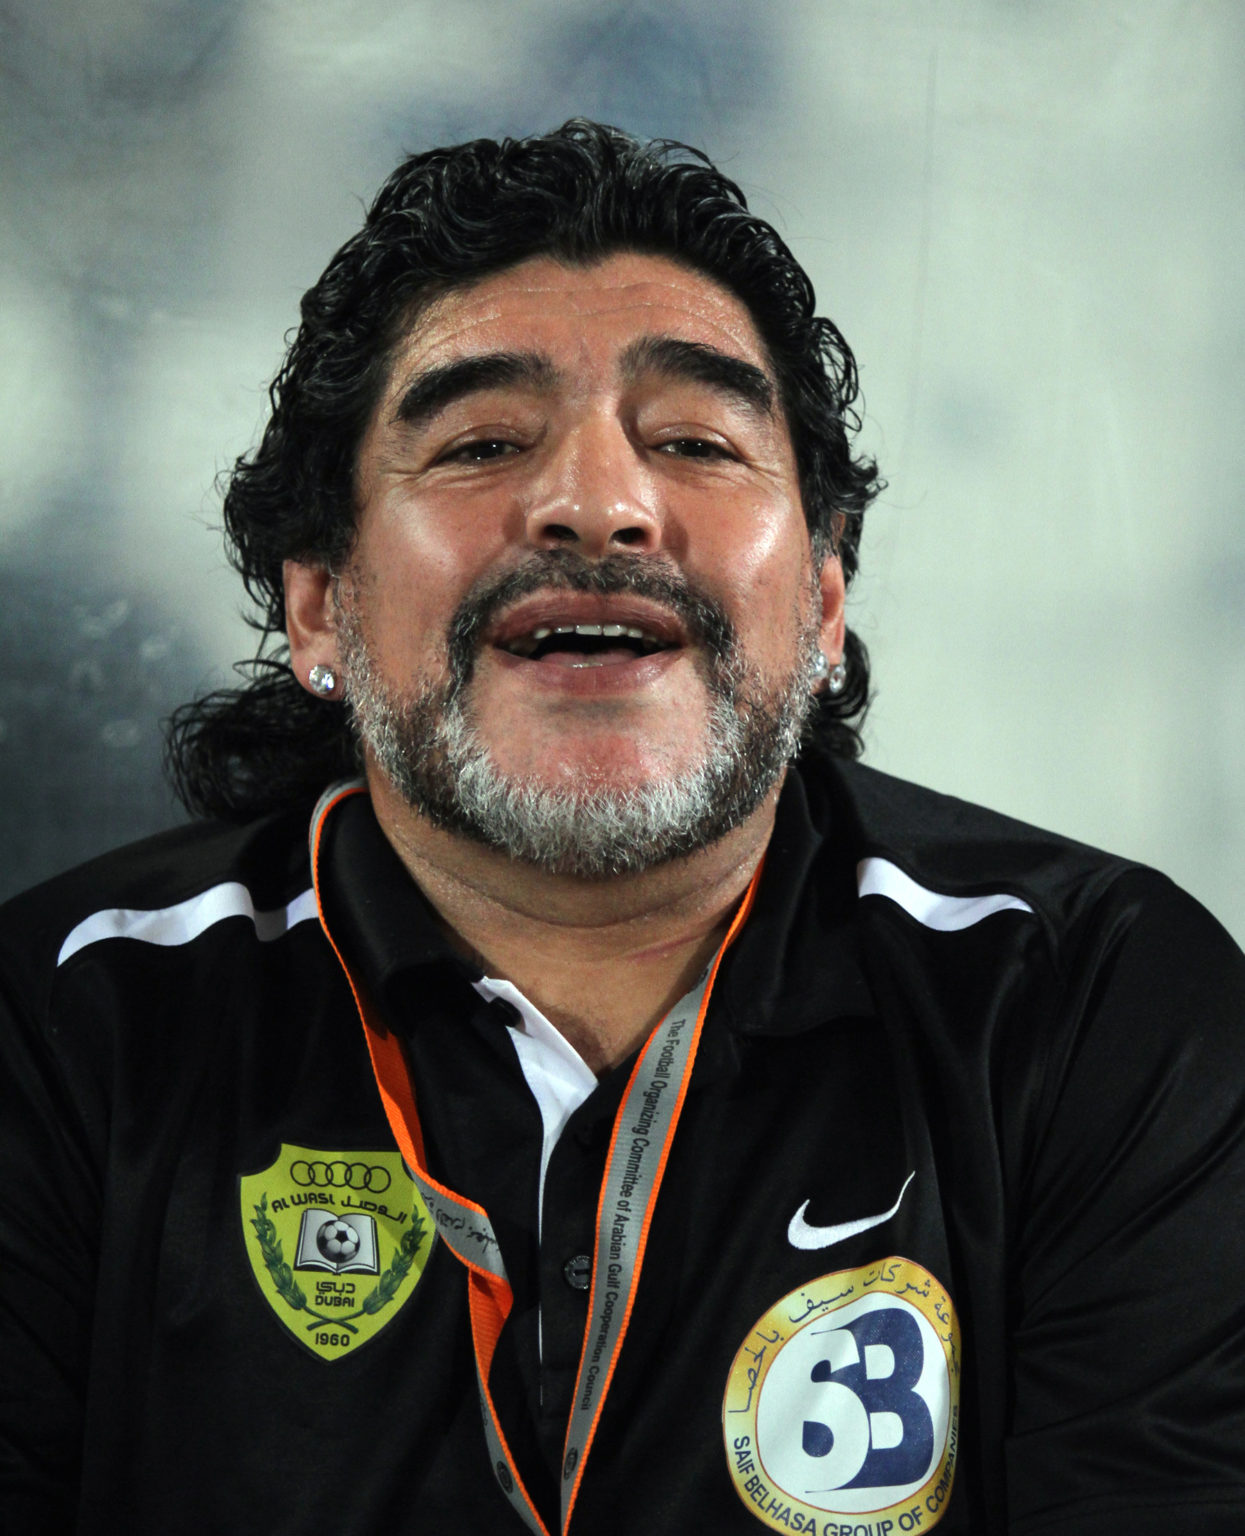 Diego Maradona a fost condus pe ultimul drum! Ce a declarat președintele Argentinei despre legenda fotbalului mondial?